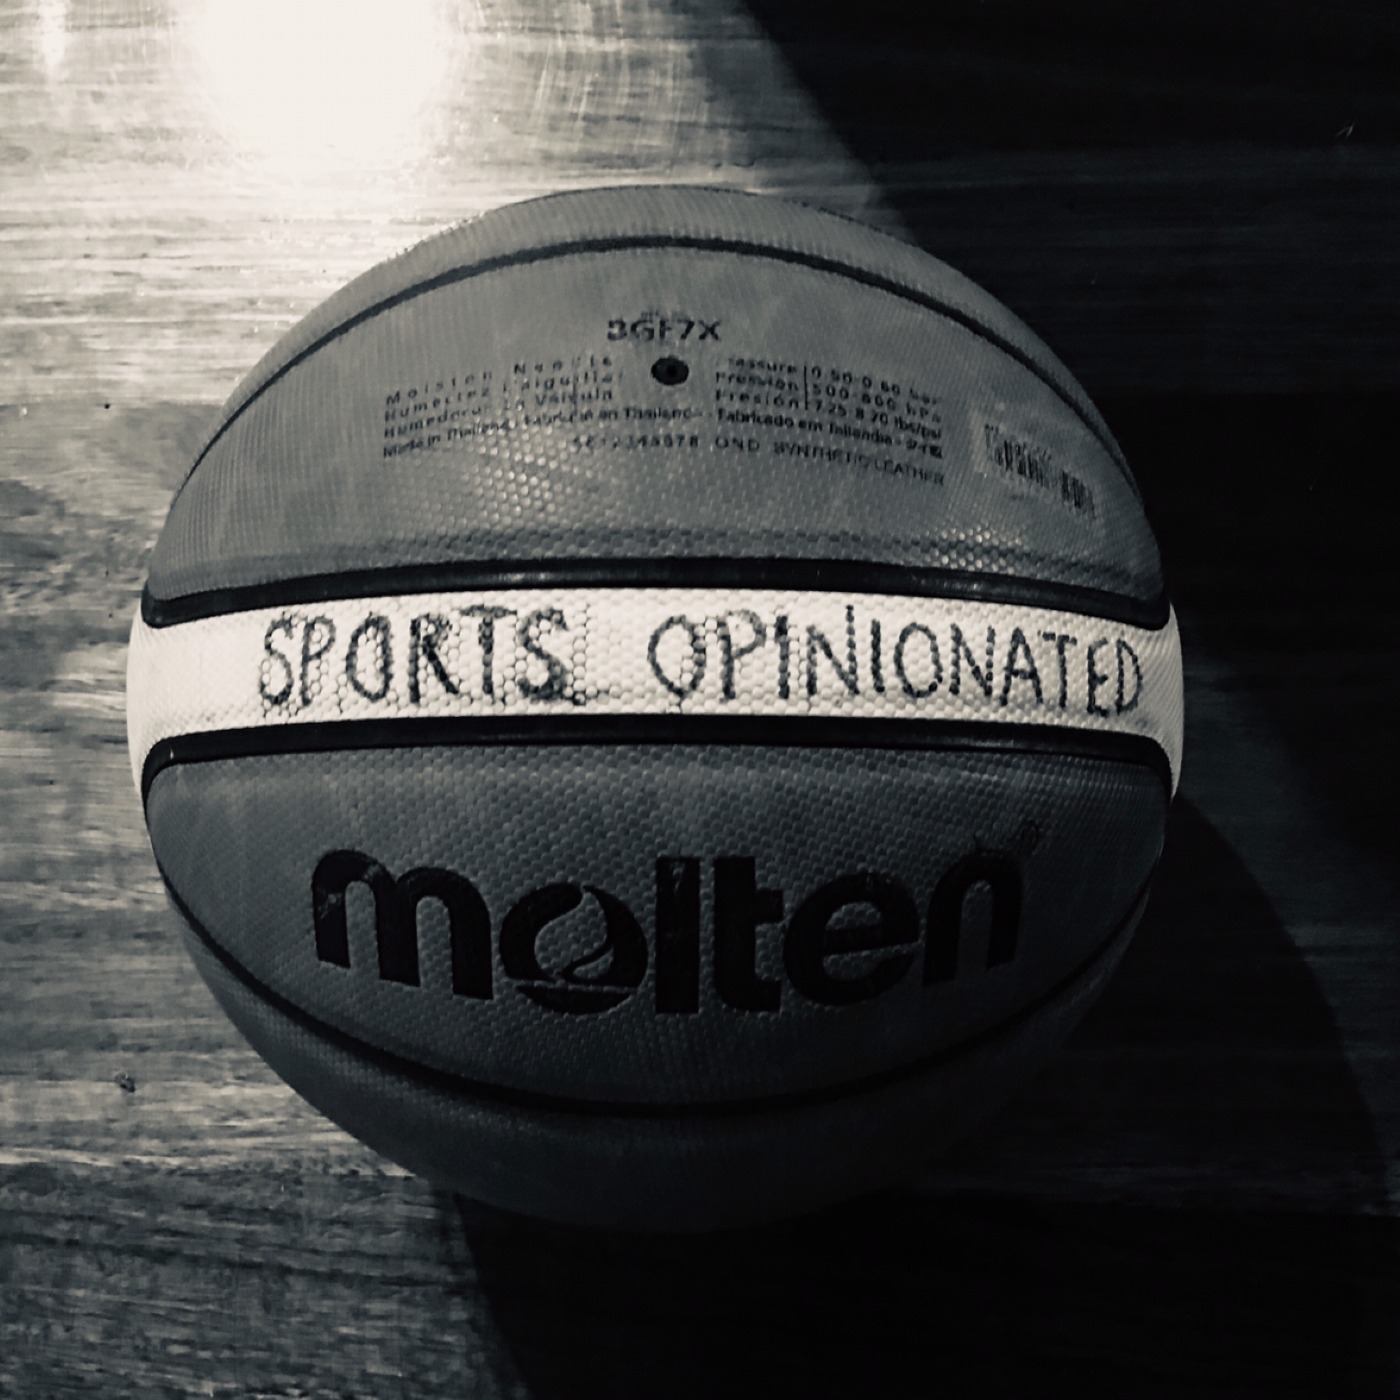  Sports Opinionated - Pod 9 - 2020 NBA Playoffs - Week 2